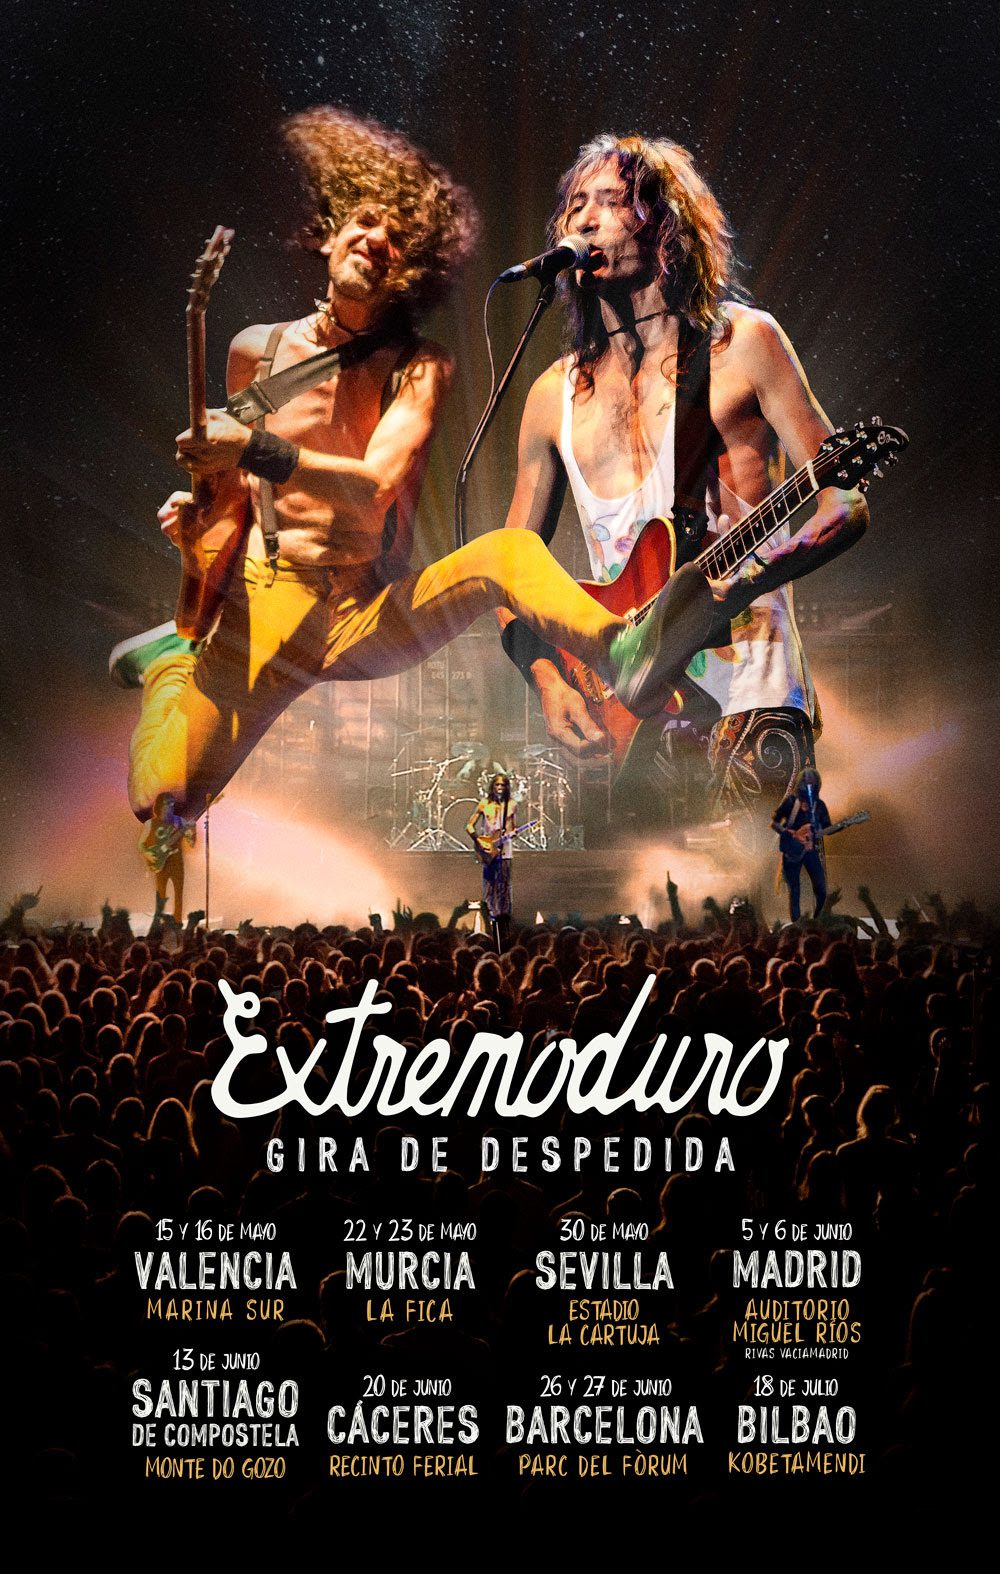 Extremoduro venden más de 200.000 entradas de su gira de despedida en 24 horas